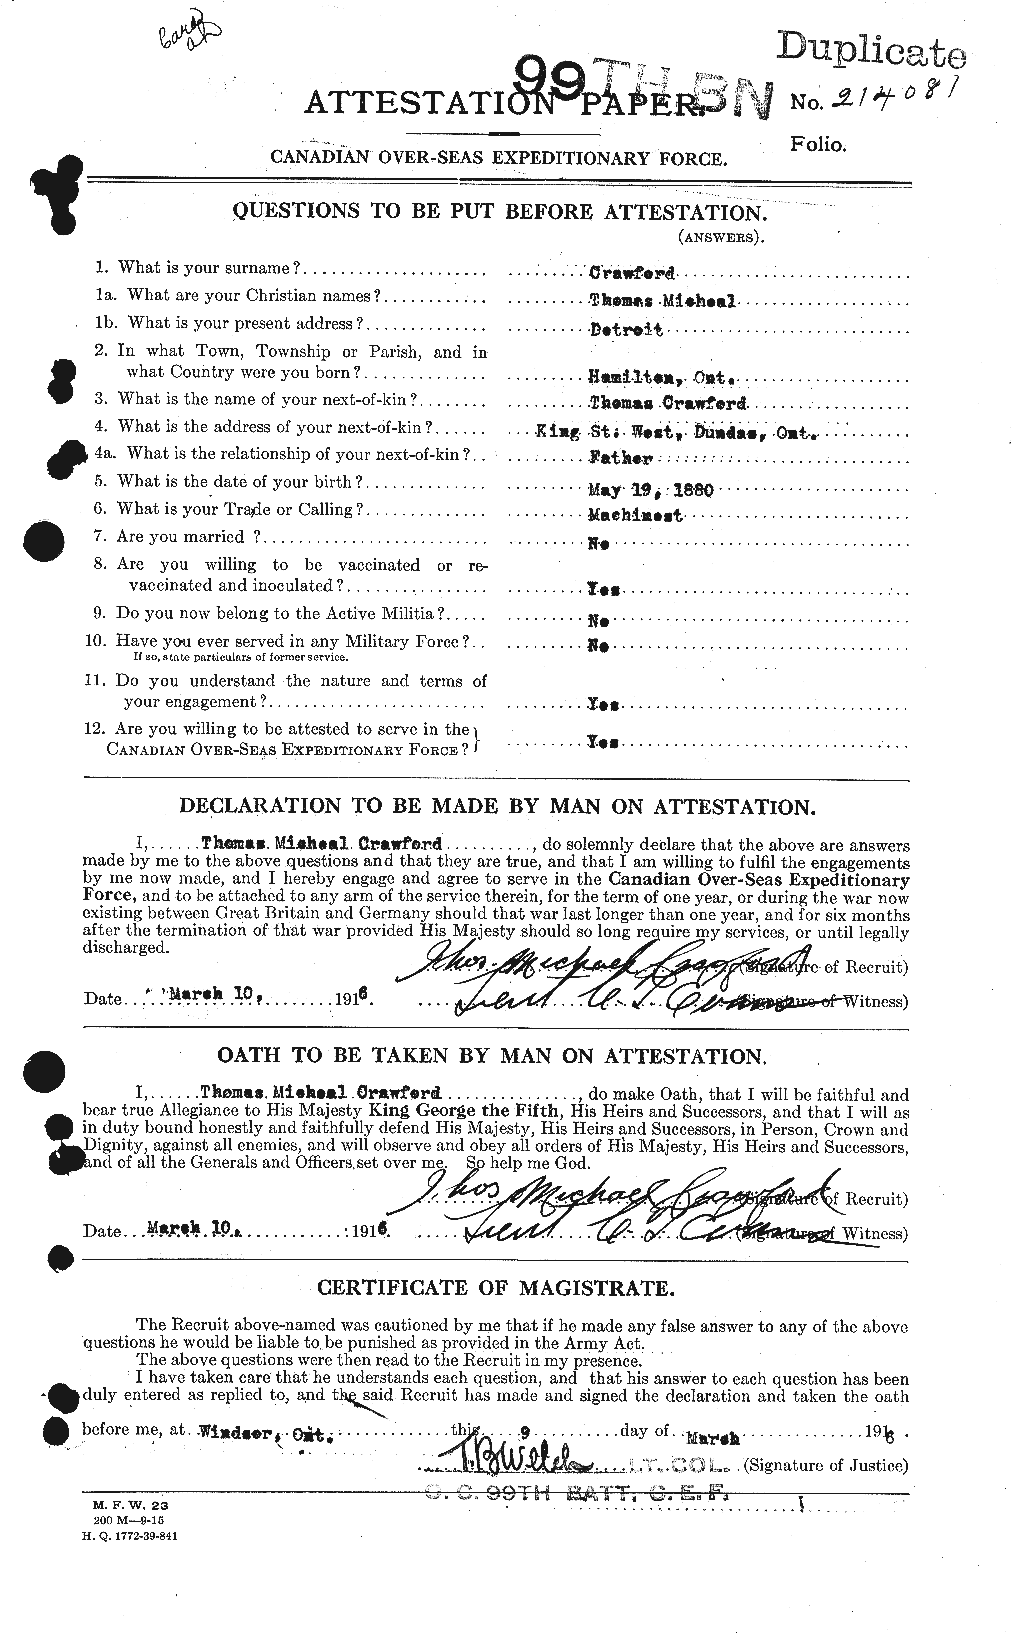 Dossiers du Personnel de la Première Guerre mondiale - CEC 061350a